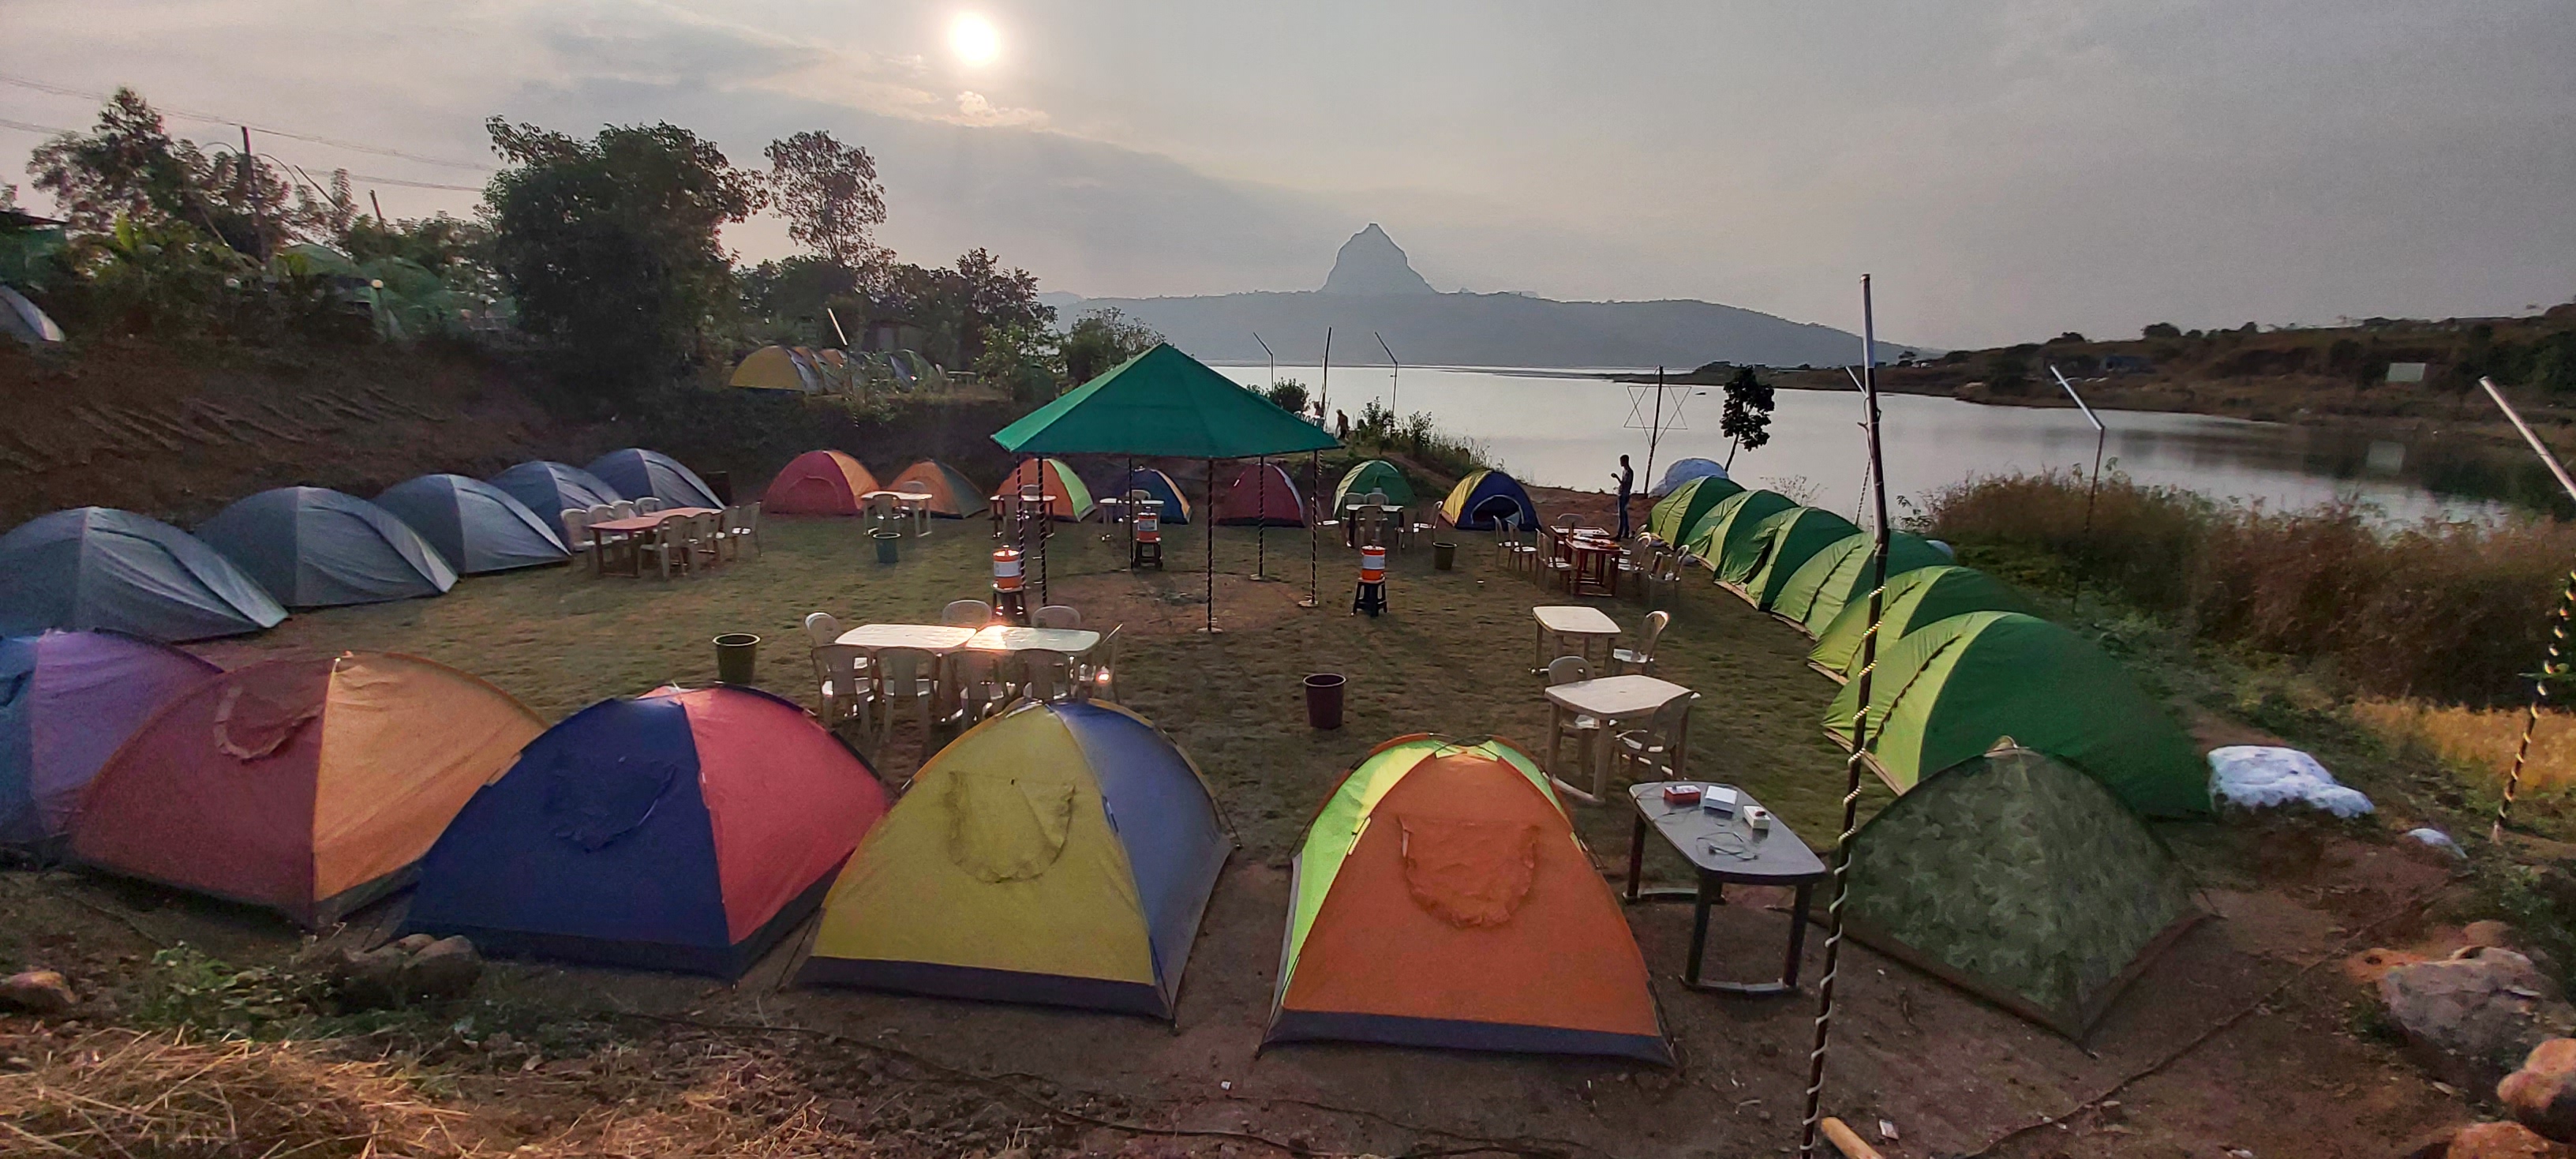 Camping in mumbai 